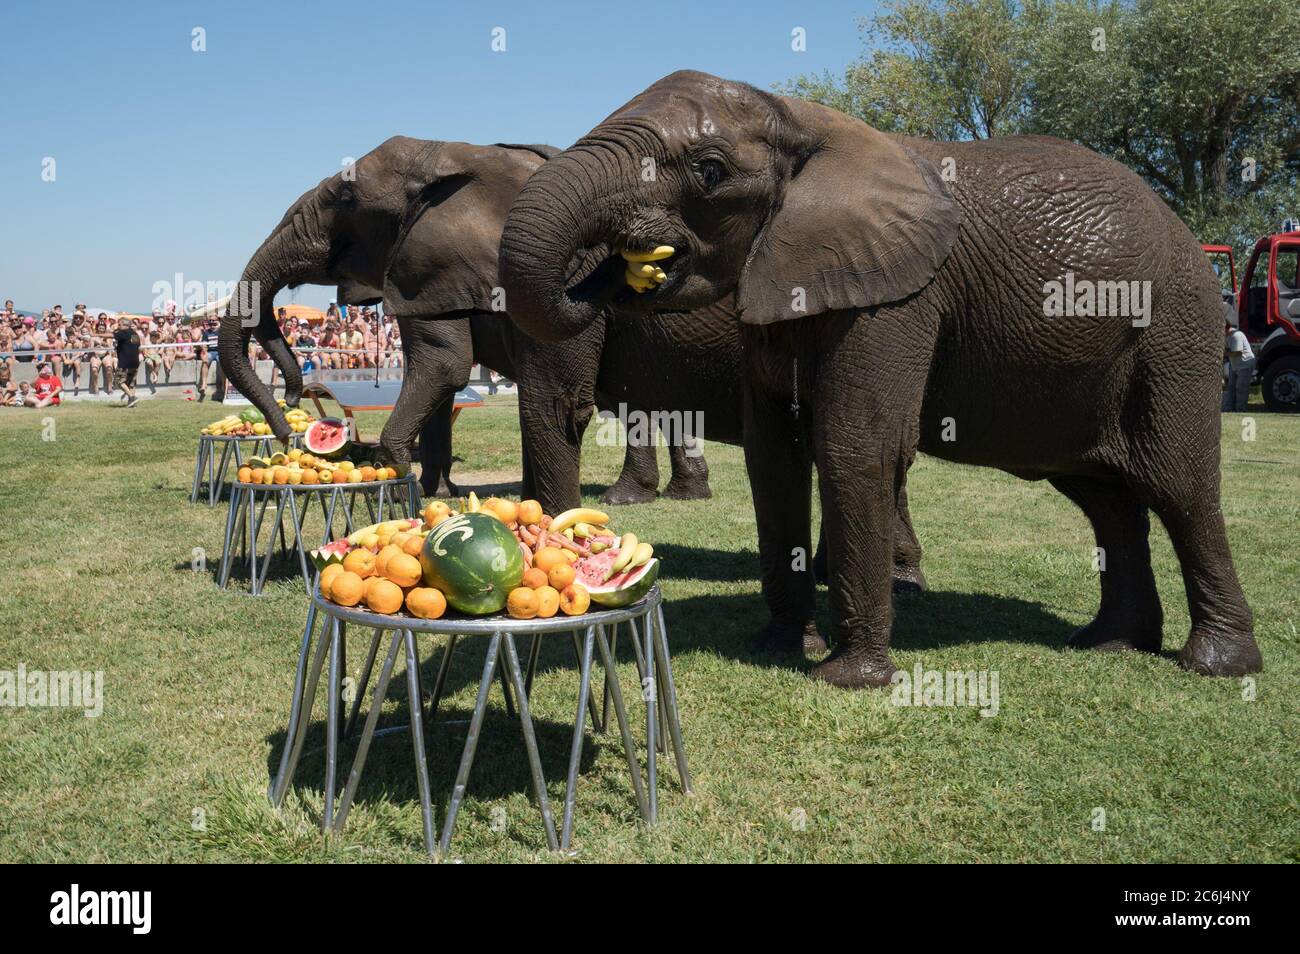 Balatonlelle. 10 juillet 2020. Les éléphants du cirque national hongrois mangent des fruits lors d'un événement promotionnel à Balatonlelle, Hongrie, le 10 juillet 2020. Crédit: Attila Volgyi/Xinhua/Alay Live News Banque D'Images